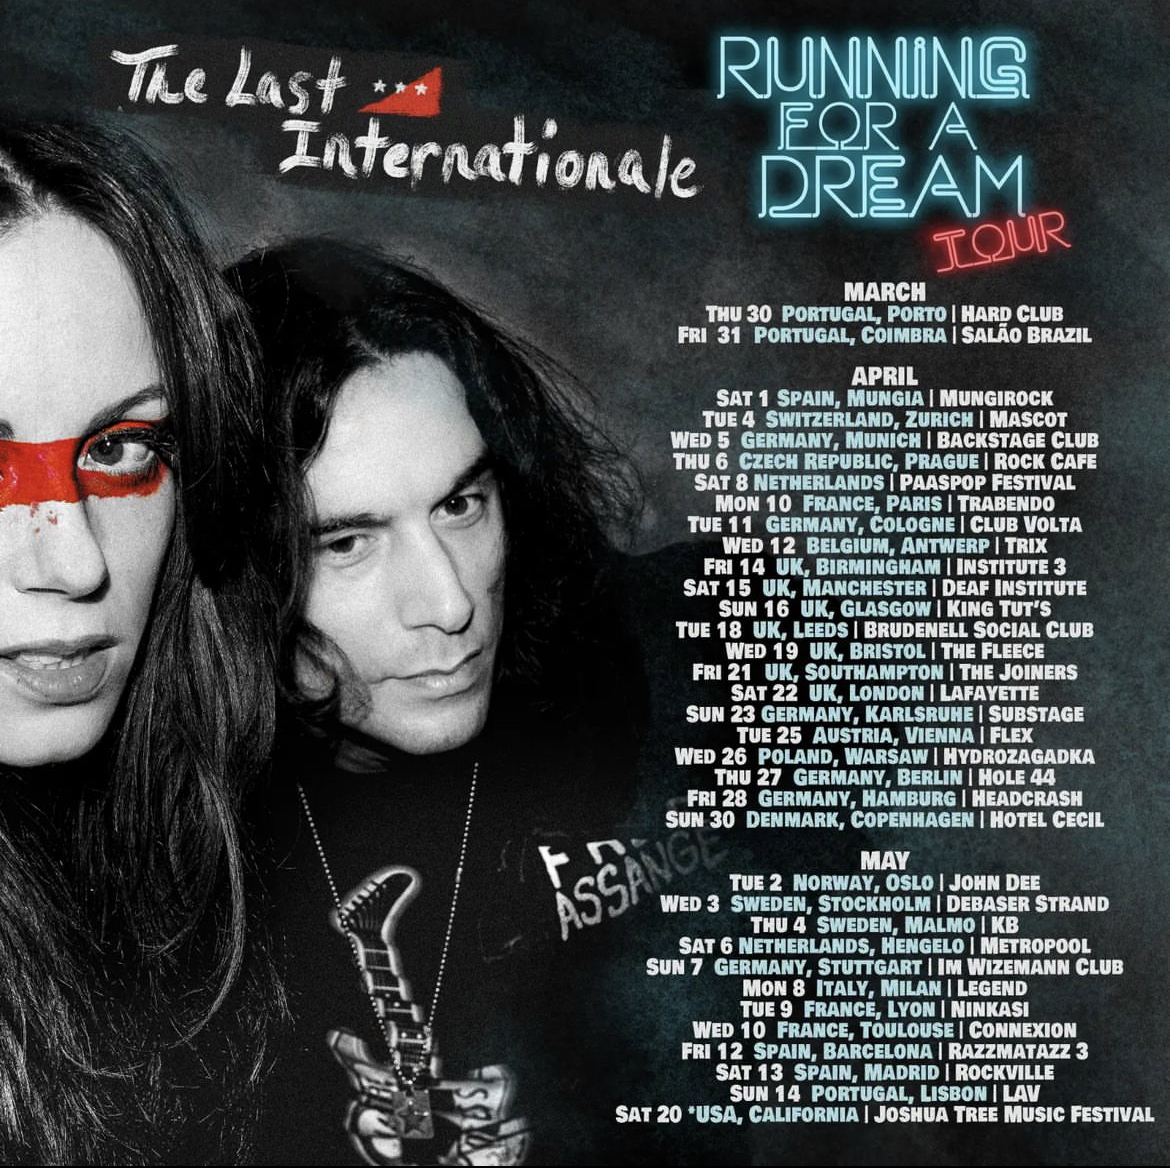 The Last Internationale presentan el vídeo de Running for a Dream y gira europea